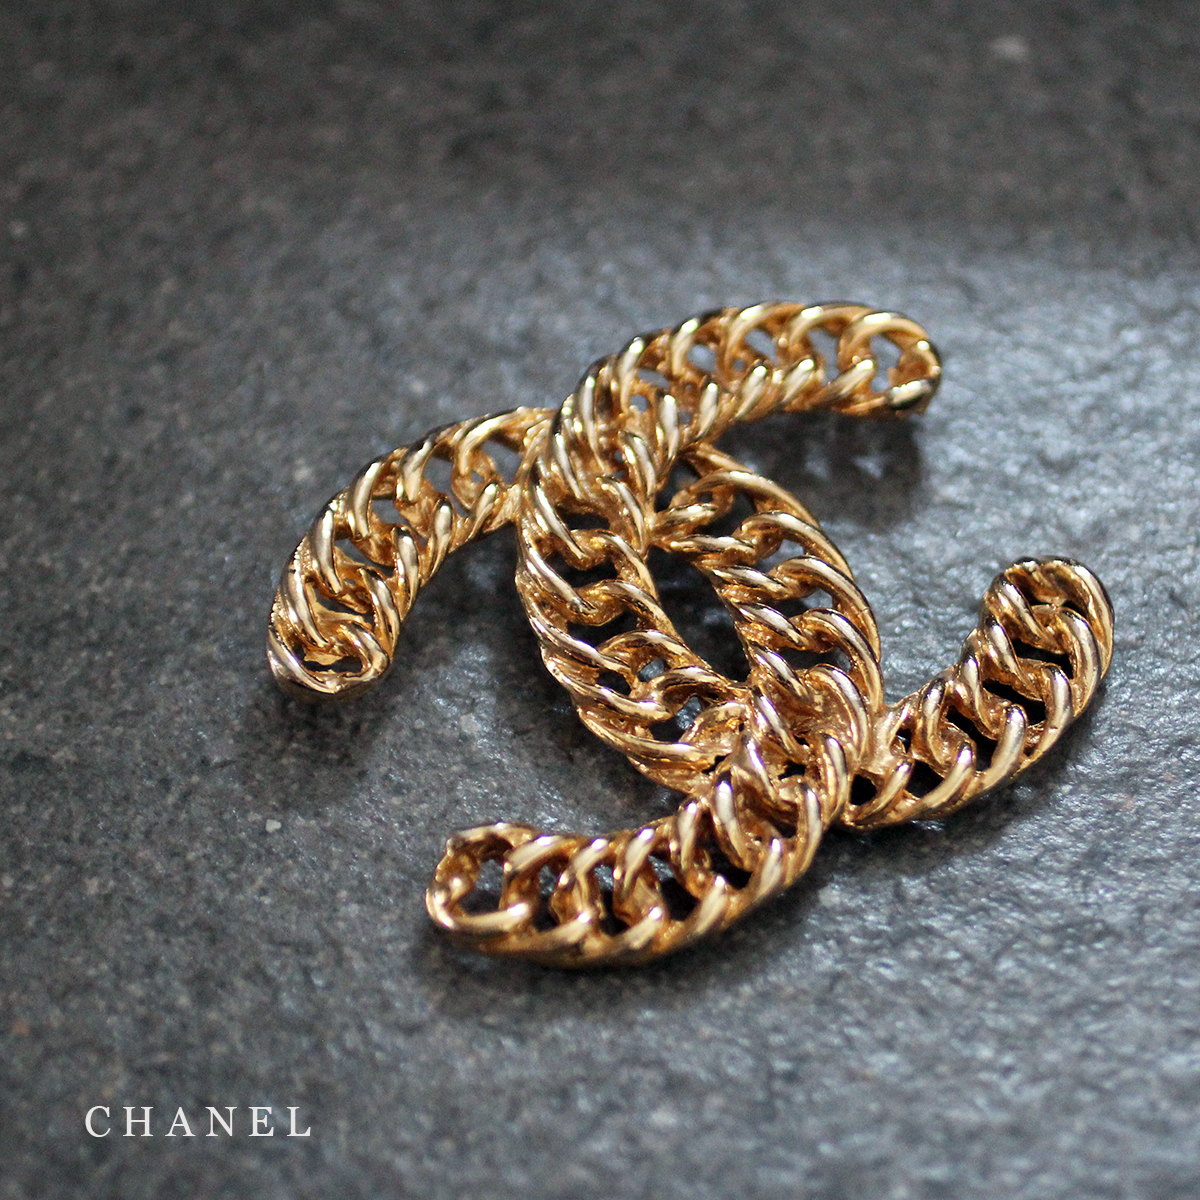  Chanel CHANEL 1107 печать примерно 5.3cm×6.5cm цепь здесь Mark Vintage подвеска с цепью брошь аксессуары ювелирные изделия мелкие вещи 